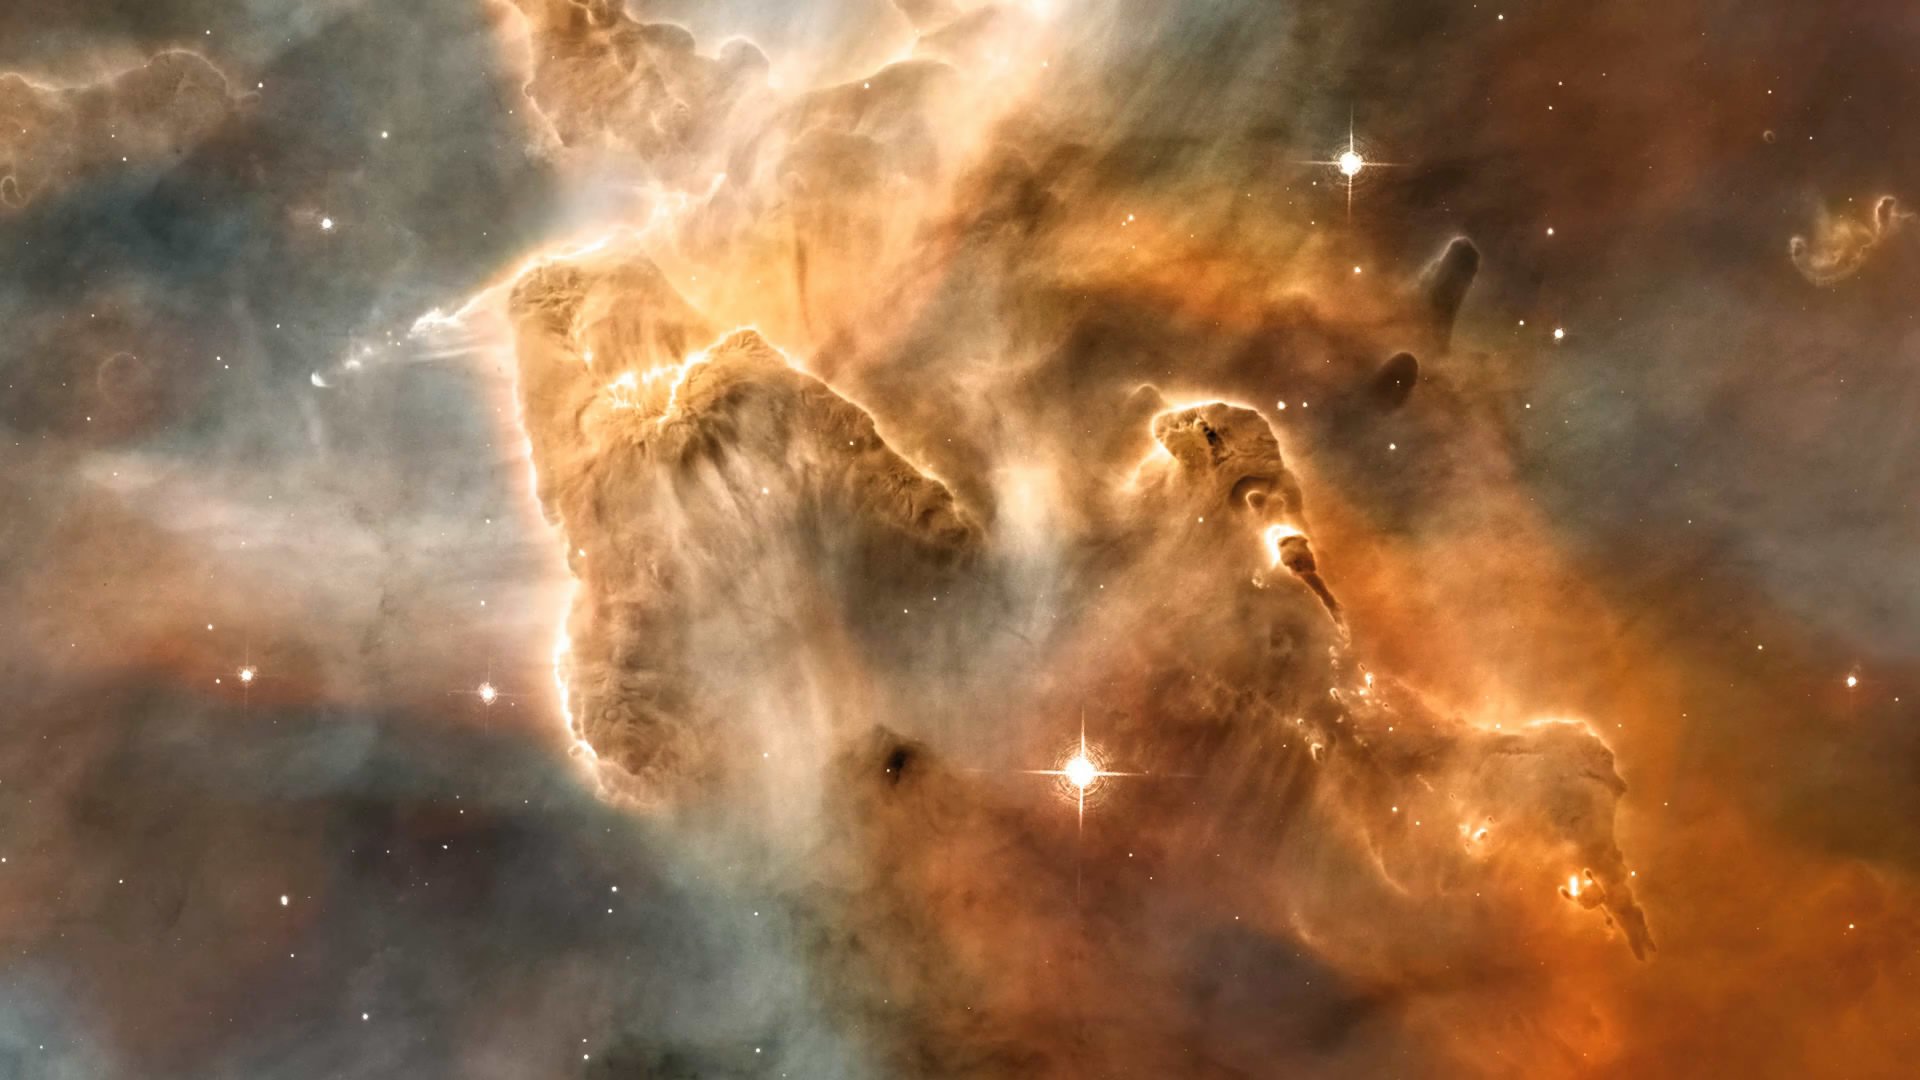 Sci Fi Nebula HD Wallpaper Background Image 1920x1080 1920x1080